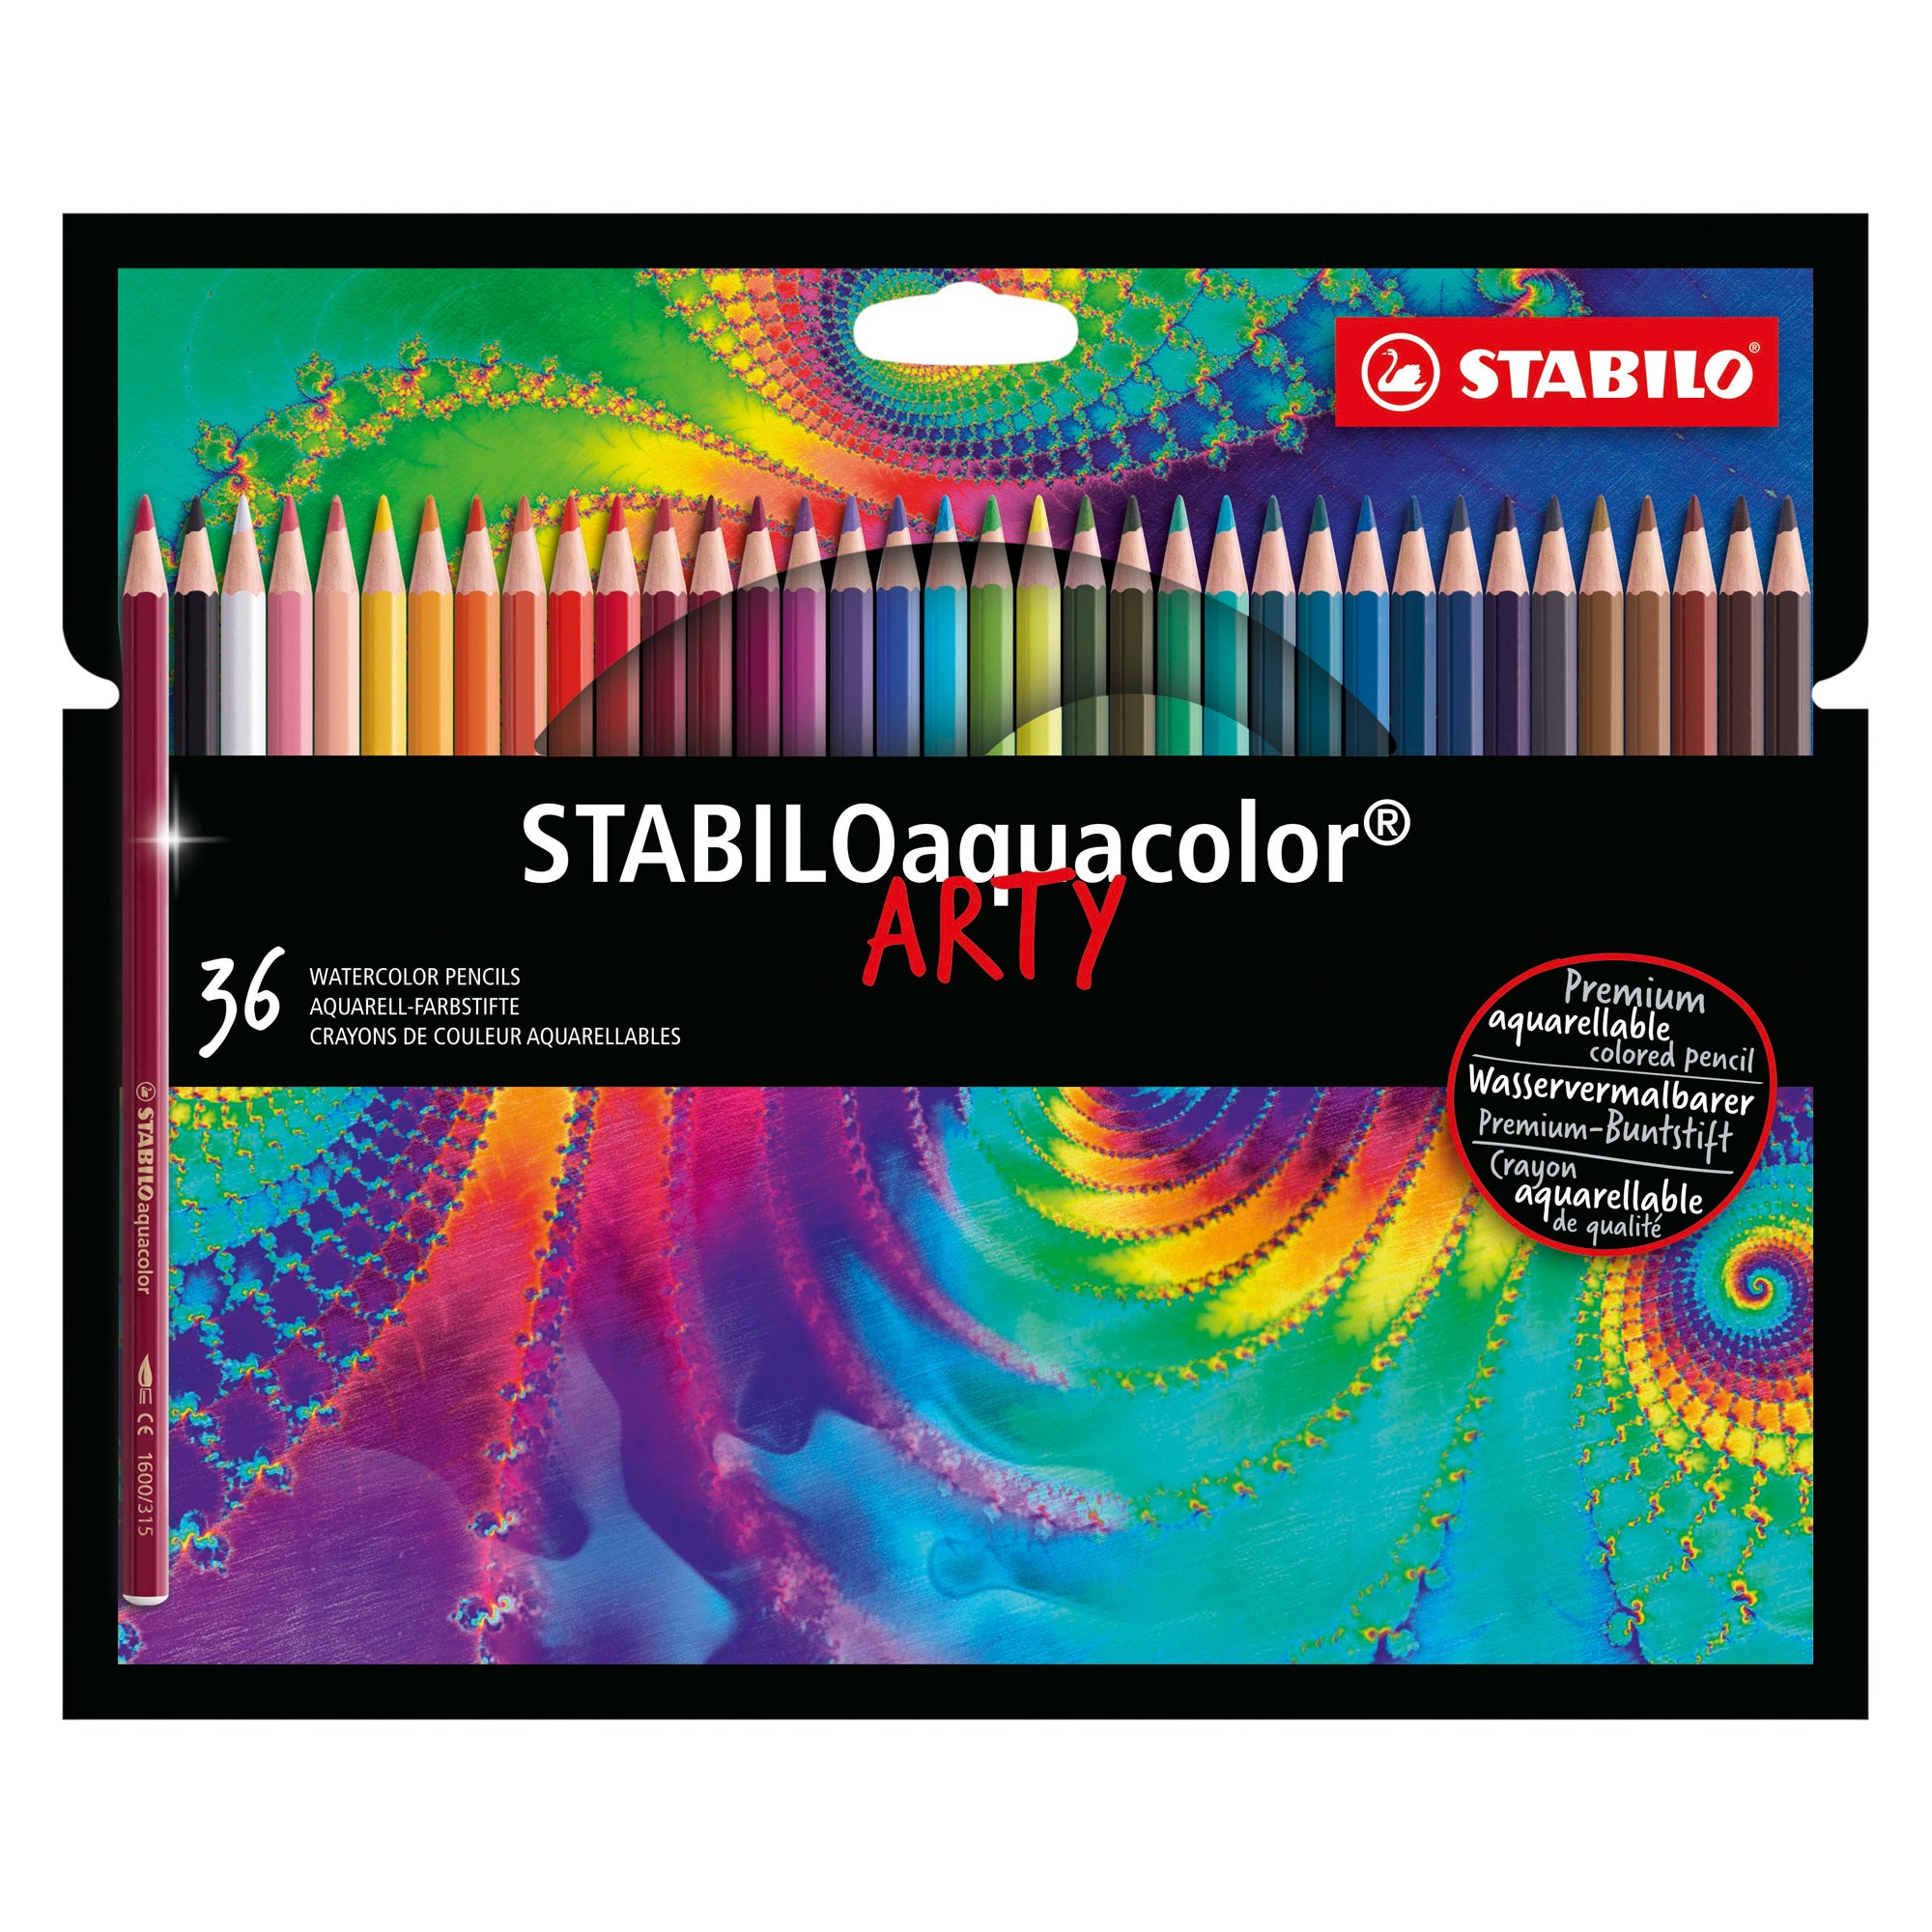 stabilo-astuccio-36-pastelli-arty-aquacolor